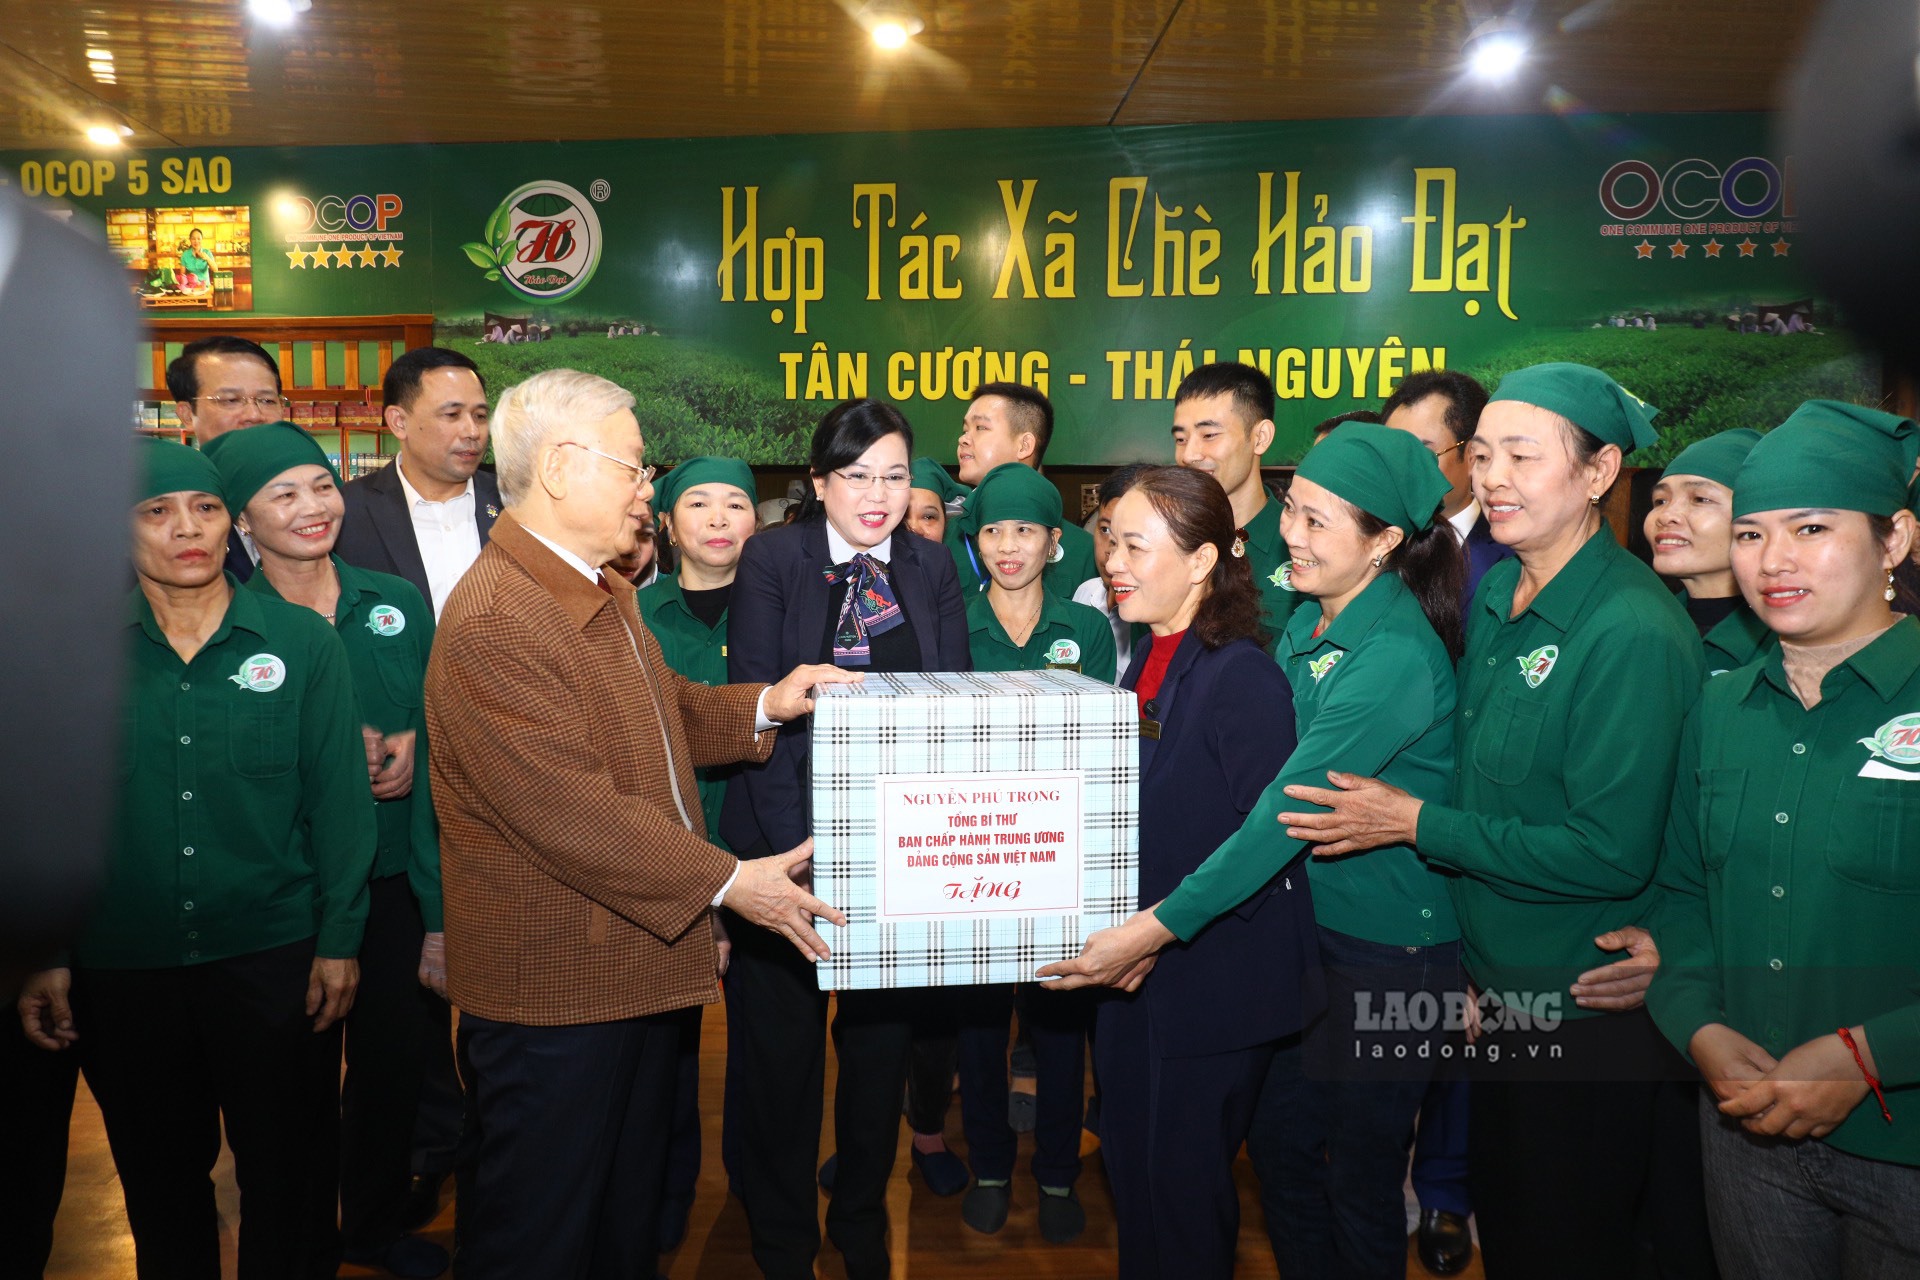 Tổng Bí thư Nguyễn Phú Trọng tặng quà cho cán bộ, người lao động của HTX chè Hảo Đạt.